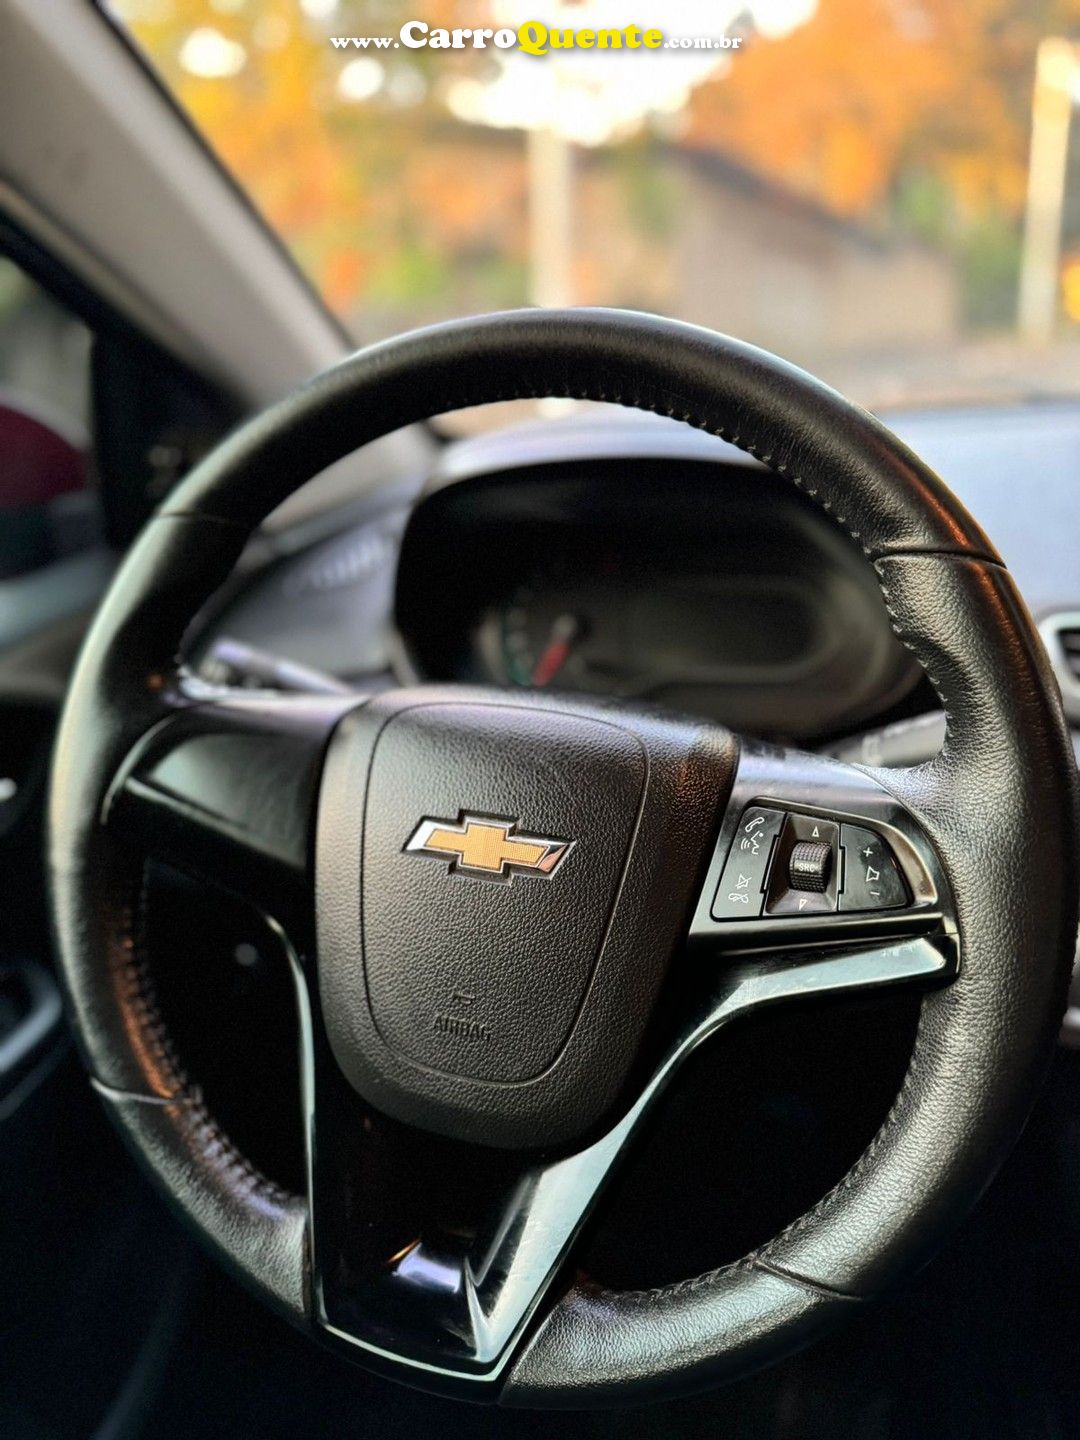 Chevrolet Onix LTZ 1.4 Flex 2018 Lindíssimo!! - Loja